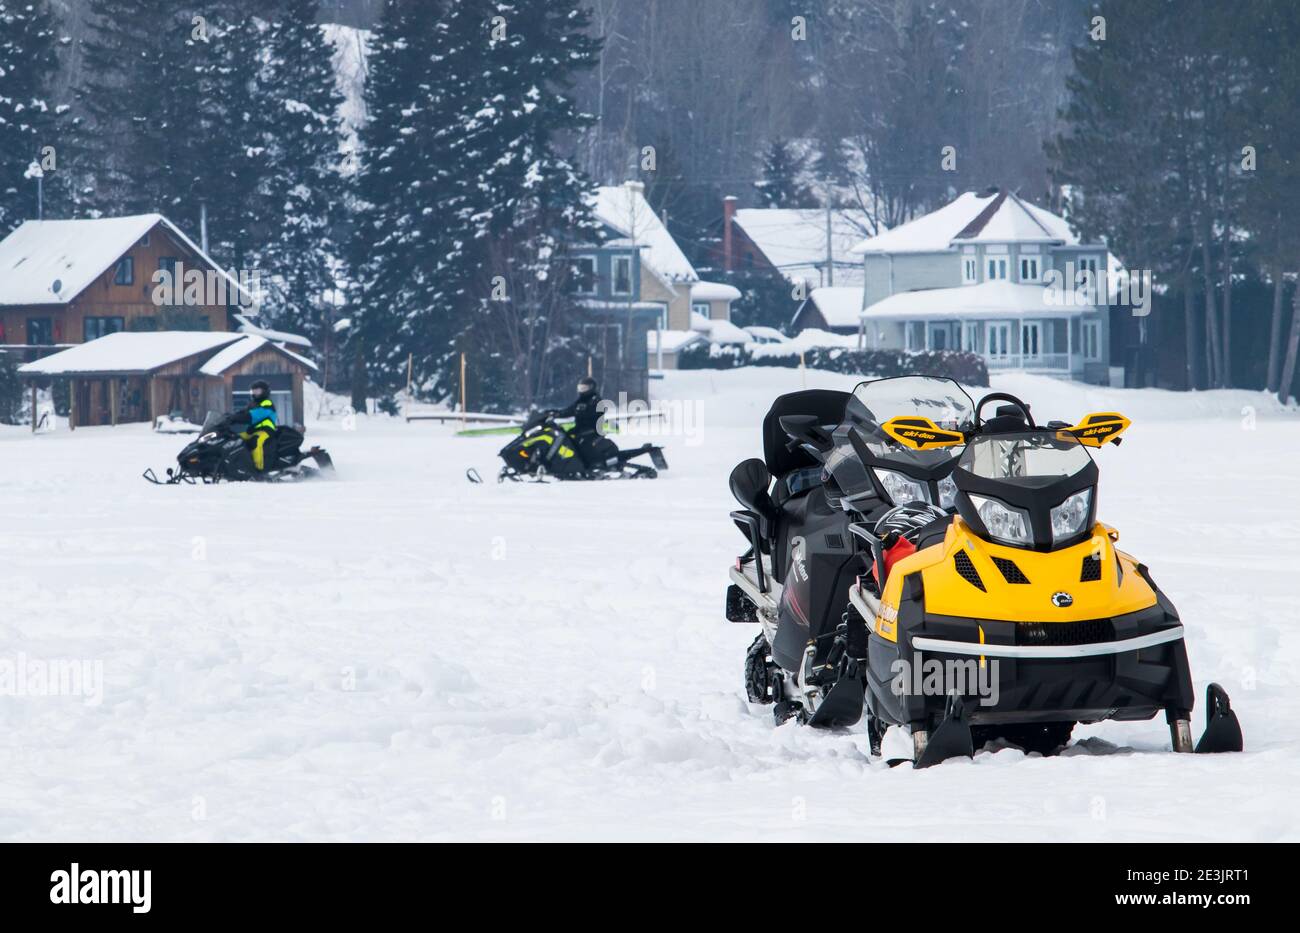 Februar 2, 2020 - Saint-Jean-des-Piles, QC; Kanada: Zwei leere Schneemobile auf einem gefrorenen See und zwei Schneemobile im Hintergrund geparkt Stockfoto